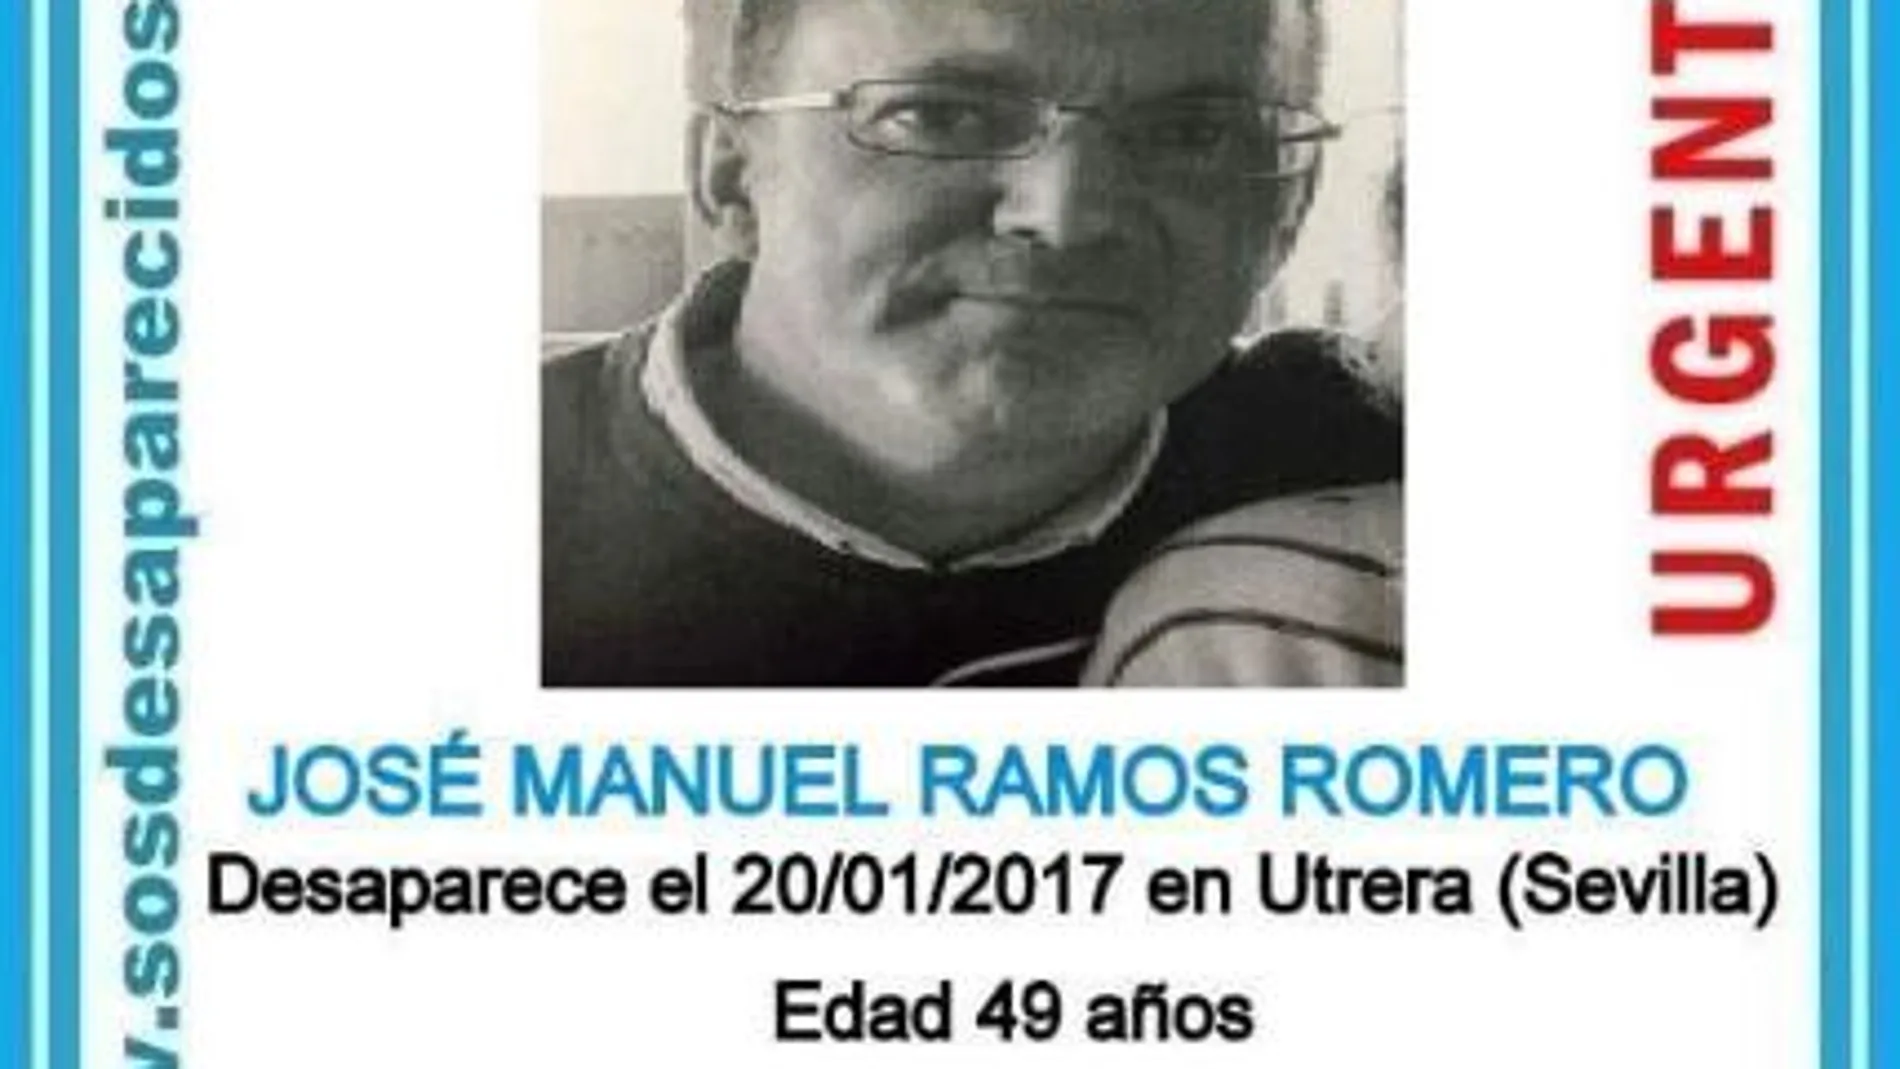 El desaparecido, José Manuel Ramos Romero